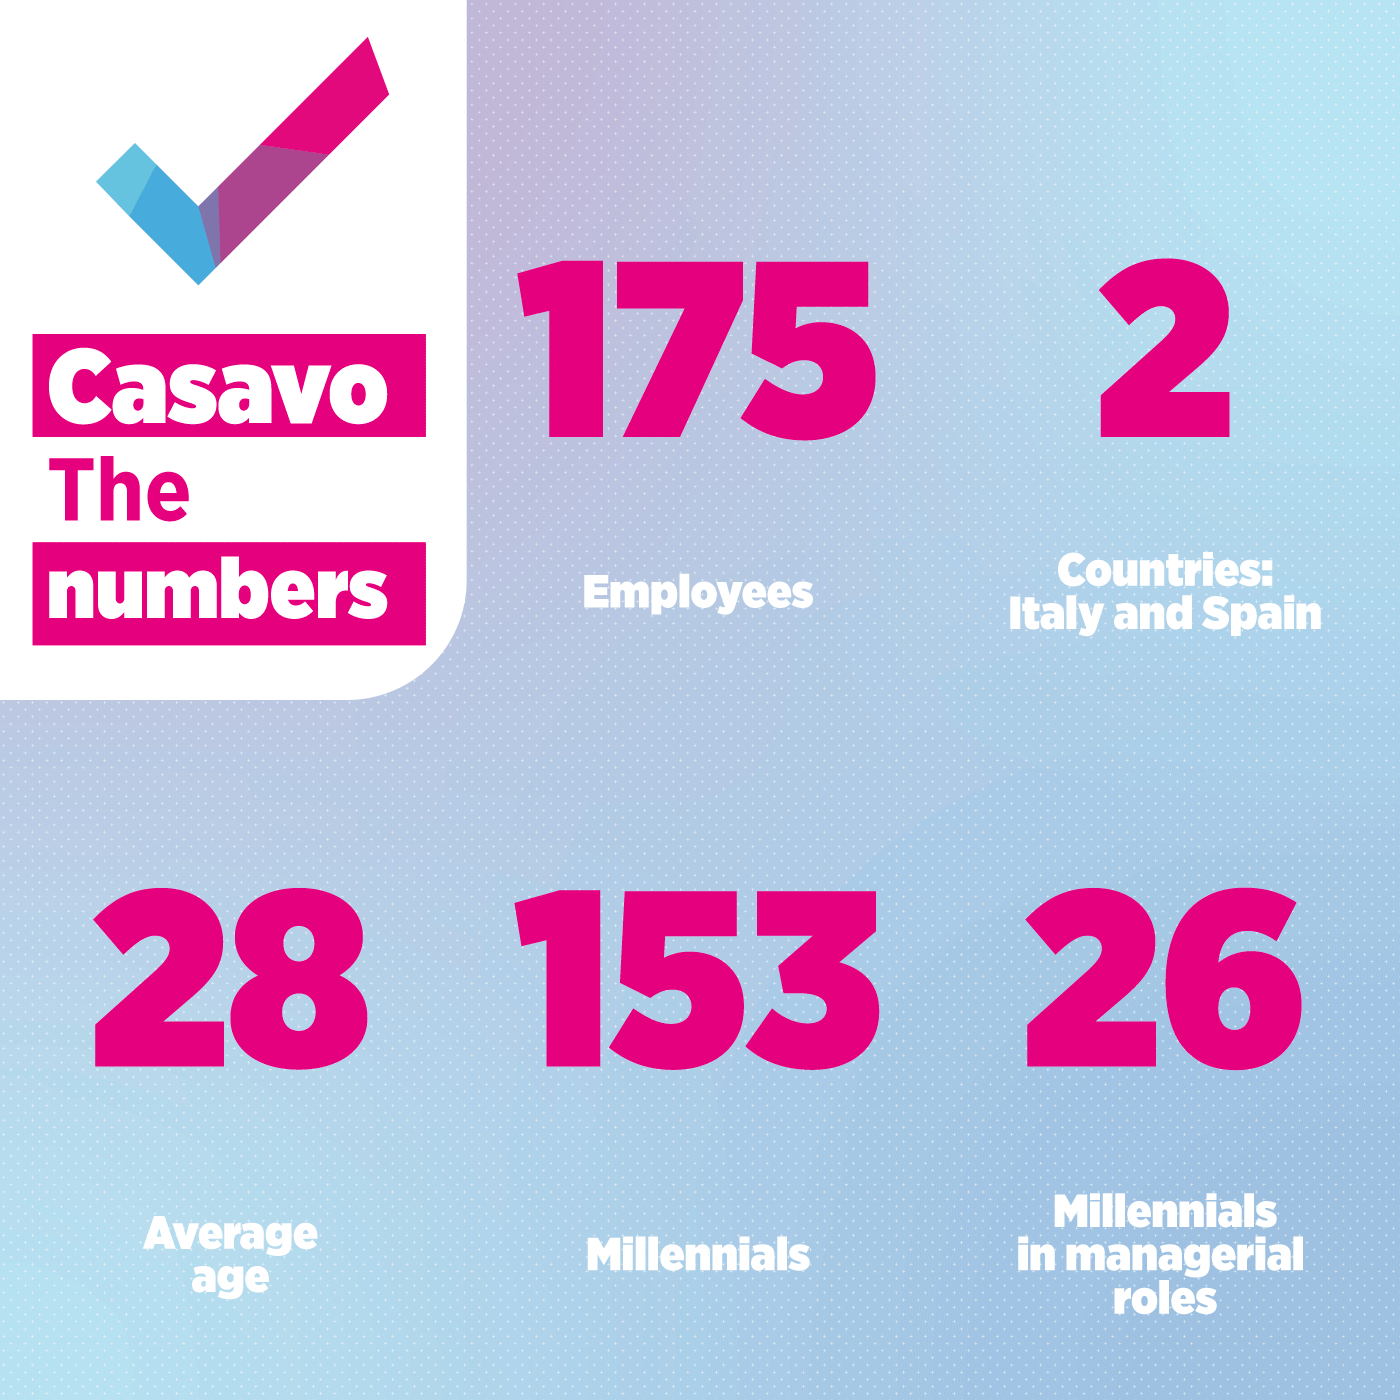 Best workplaces for Millennials 2020 - Casavo